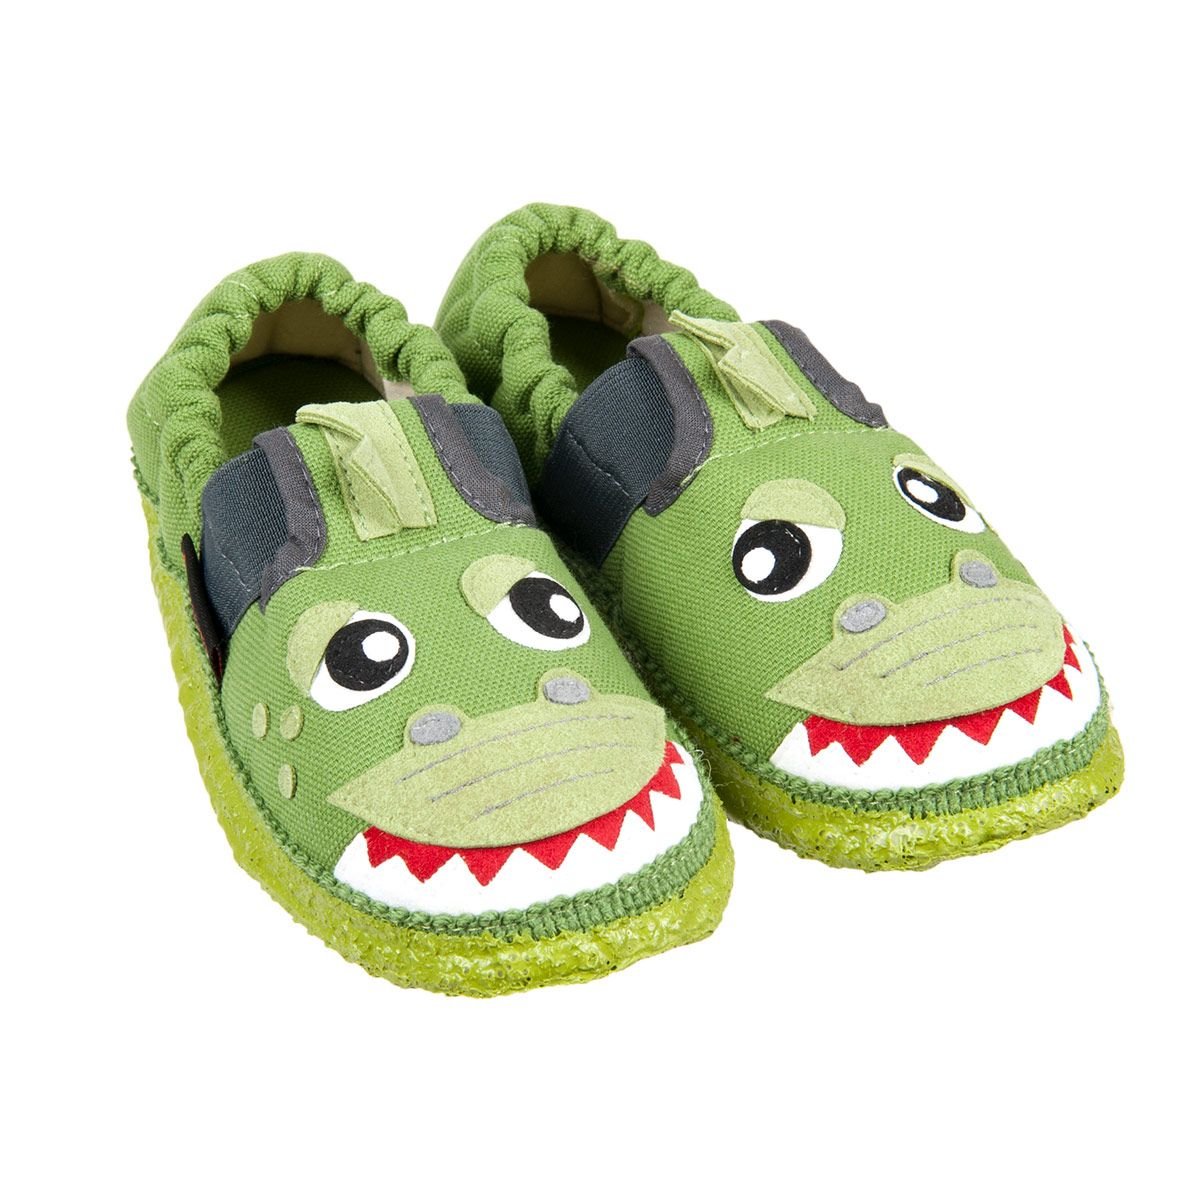 methiyadi slippers